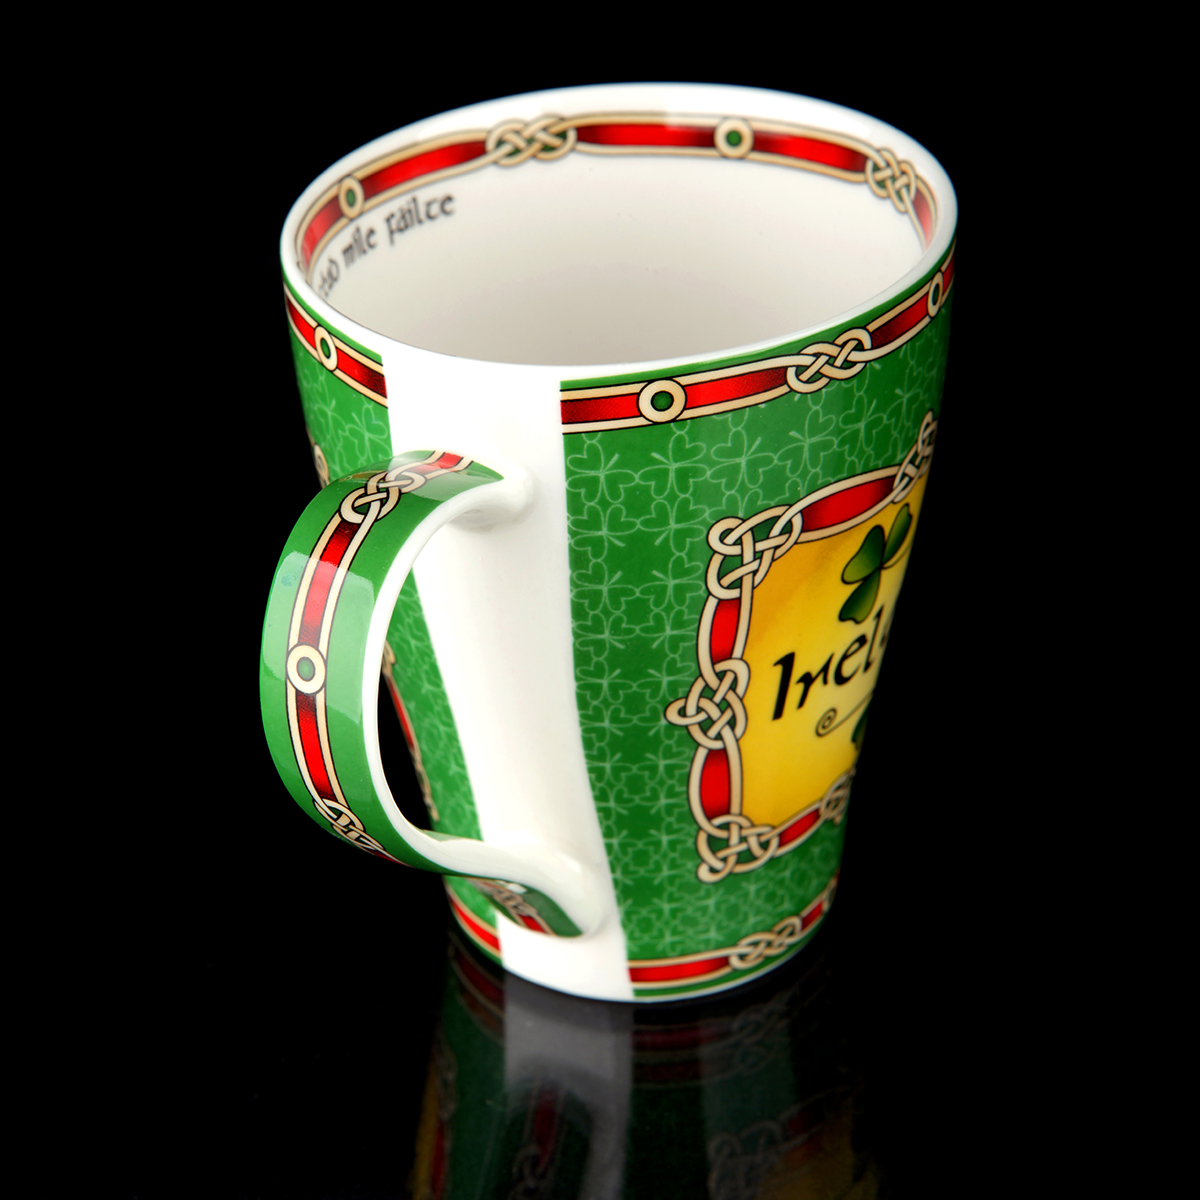 Cead Mile Failte Shamrock Mug - Irischer Kaffeebecher mit Kleeblättern & keltischen Mustern